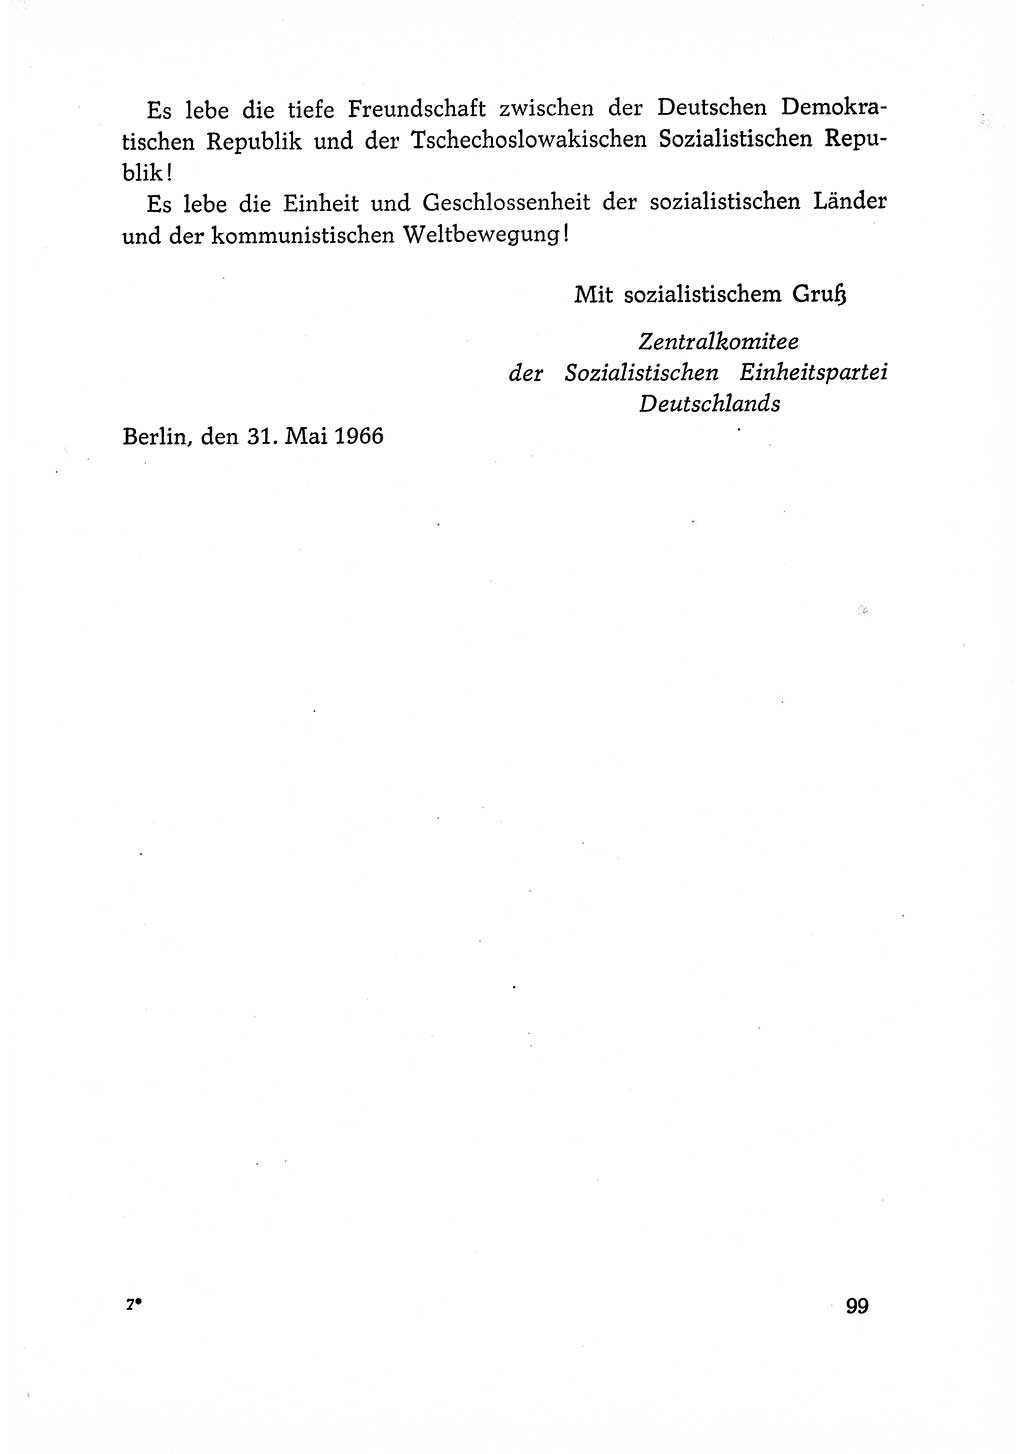 Dokumente der Sozialistischen Einheitspartei Deutschlands (SED) [Deutsche Demokratische Republik (DDR)] 1966-1967, Seite 99 (Dok. SED DDR 1966-1967, S. 99)